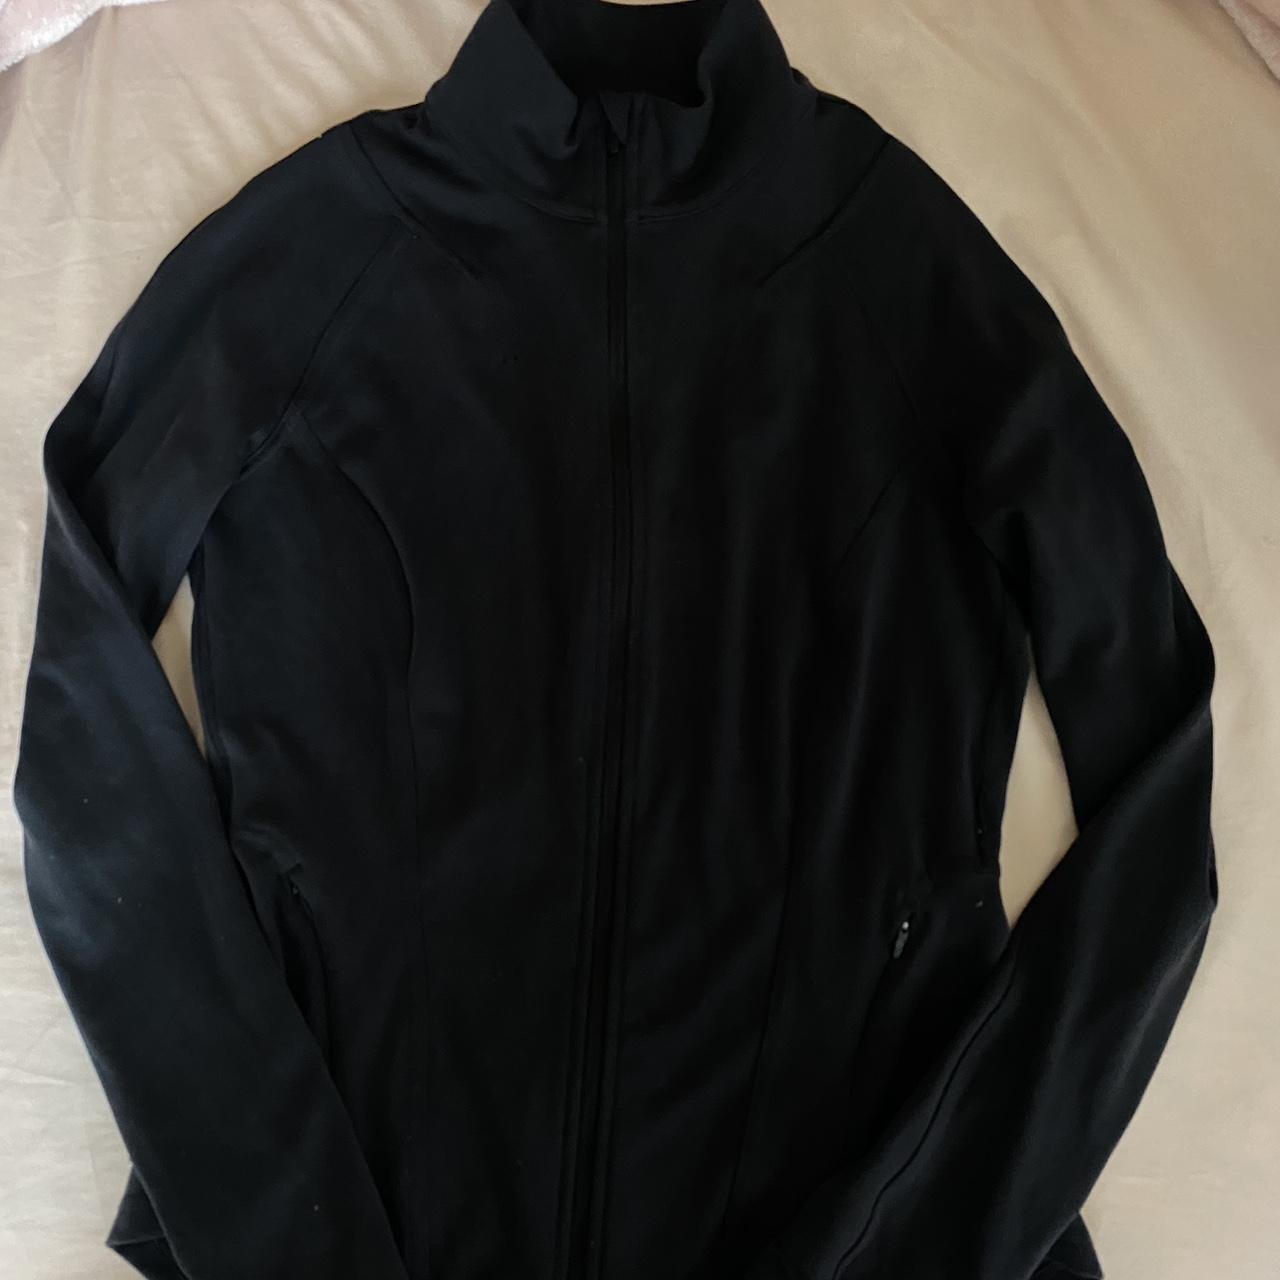 Lululemon Women's InStill Jacket Black Full Zip Size 4